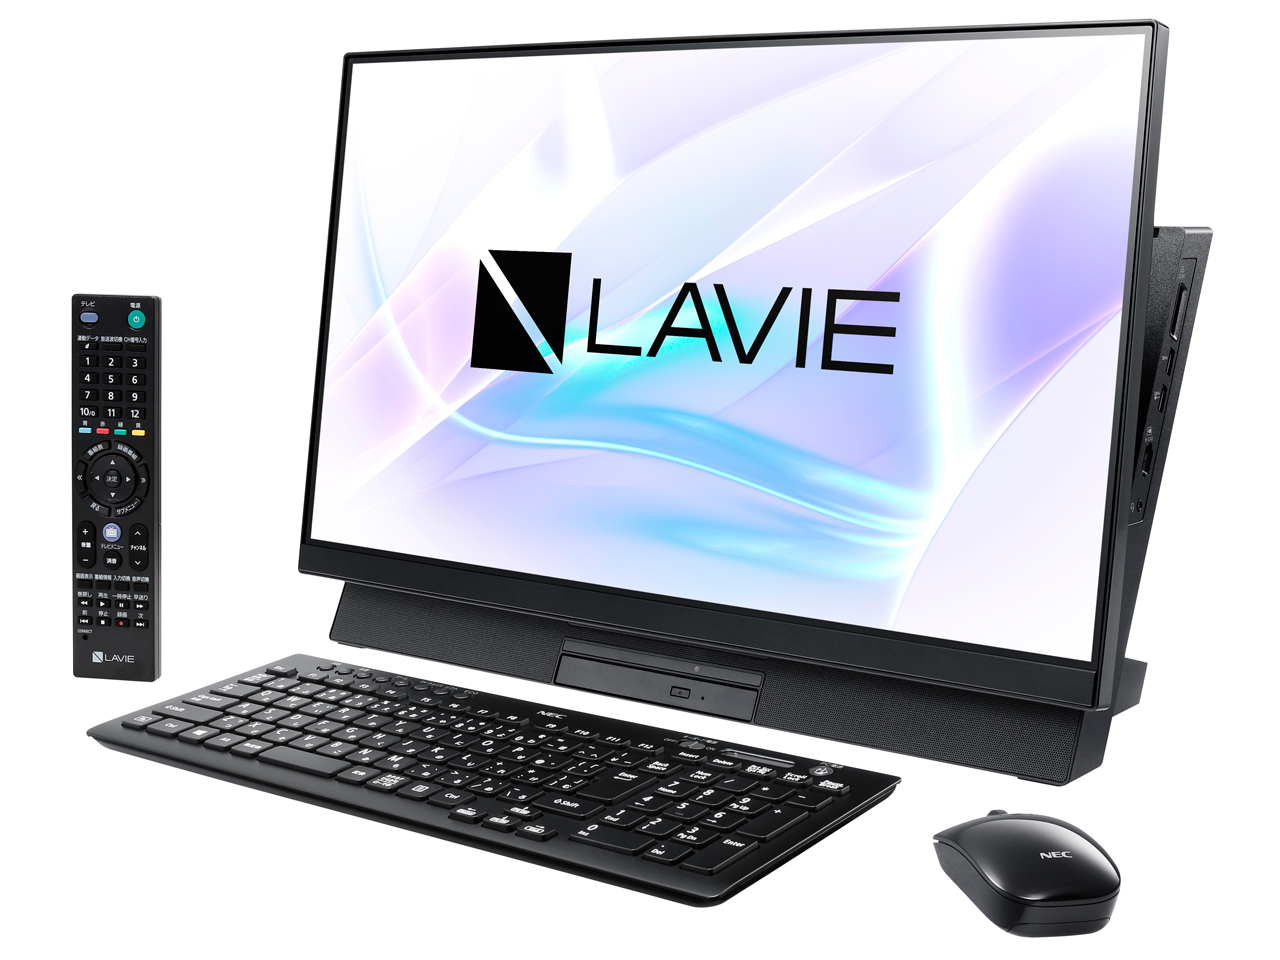 価格.com - LAVIE Desk All-in-one DA370/MAB PC-DA370MAB の製品画像